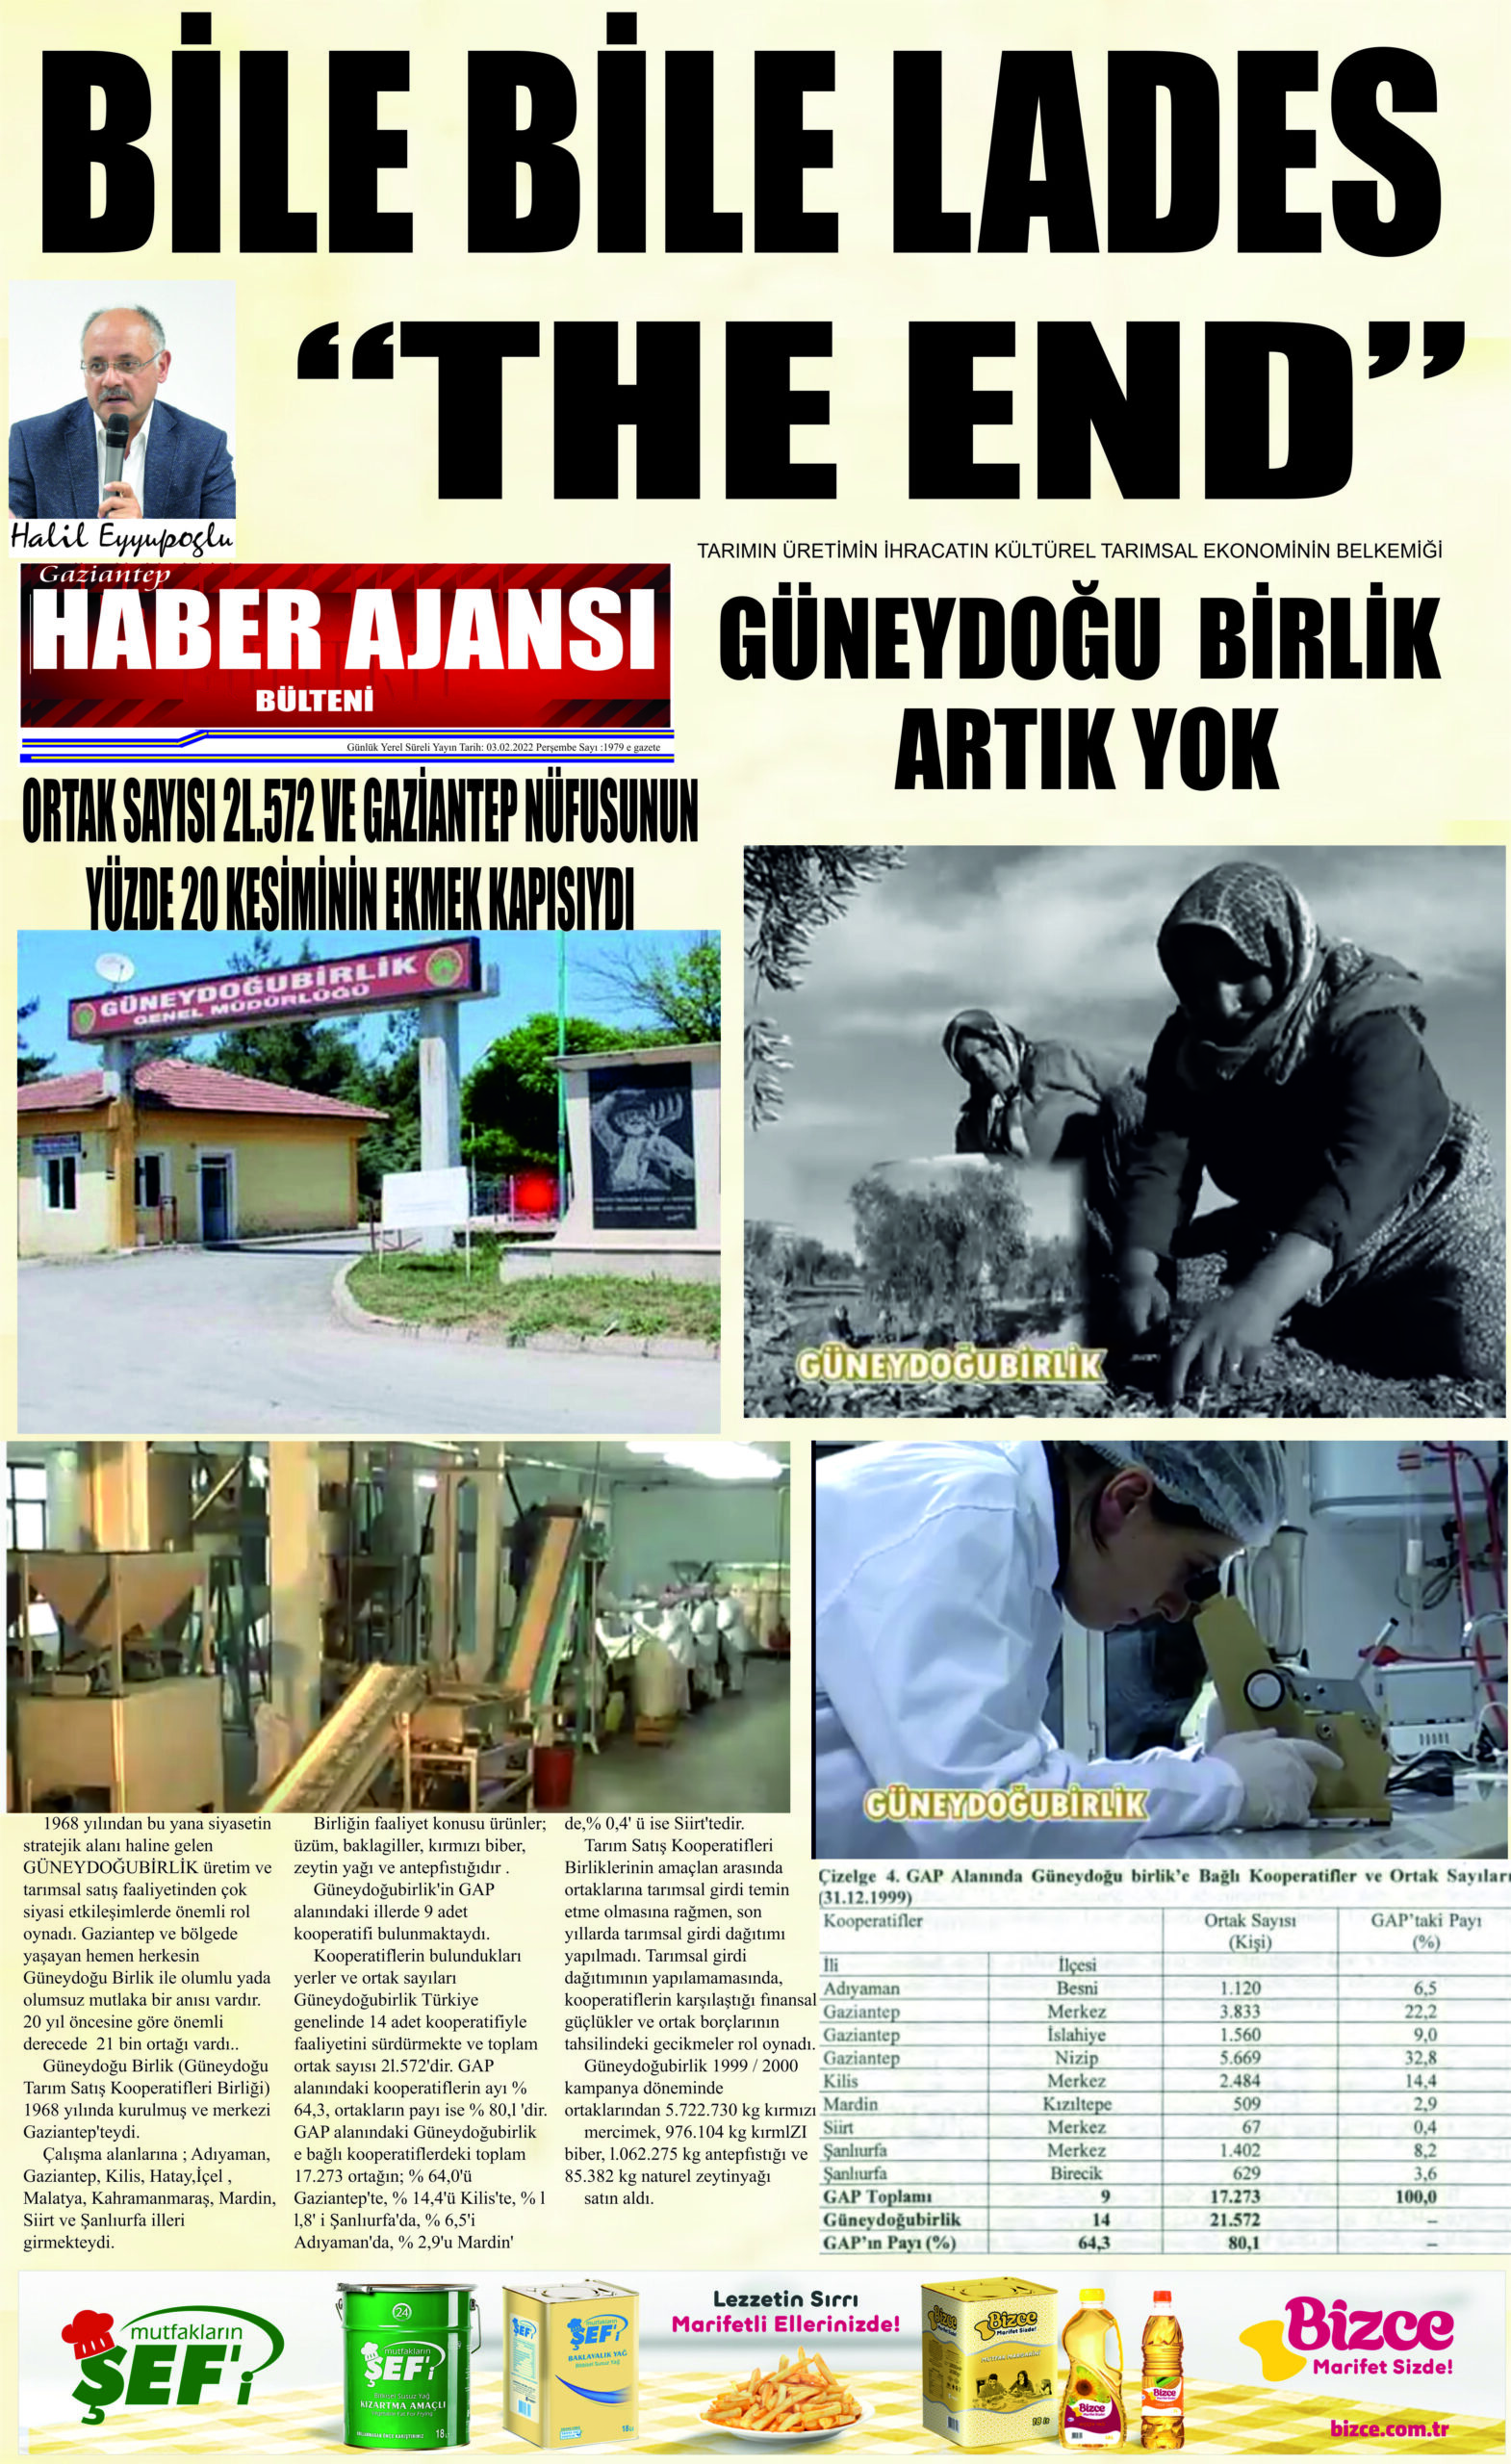 GÜNEYDOĞU TARIM SATIŞ BİRLİĞİ ARTIK YOK (Video haber-Halil Eyyupoğlu)